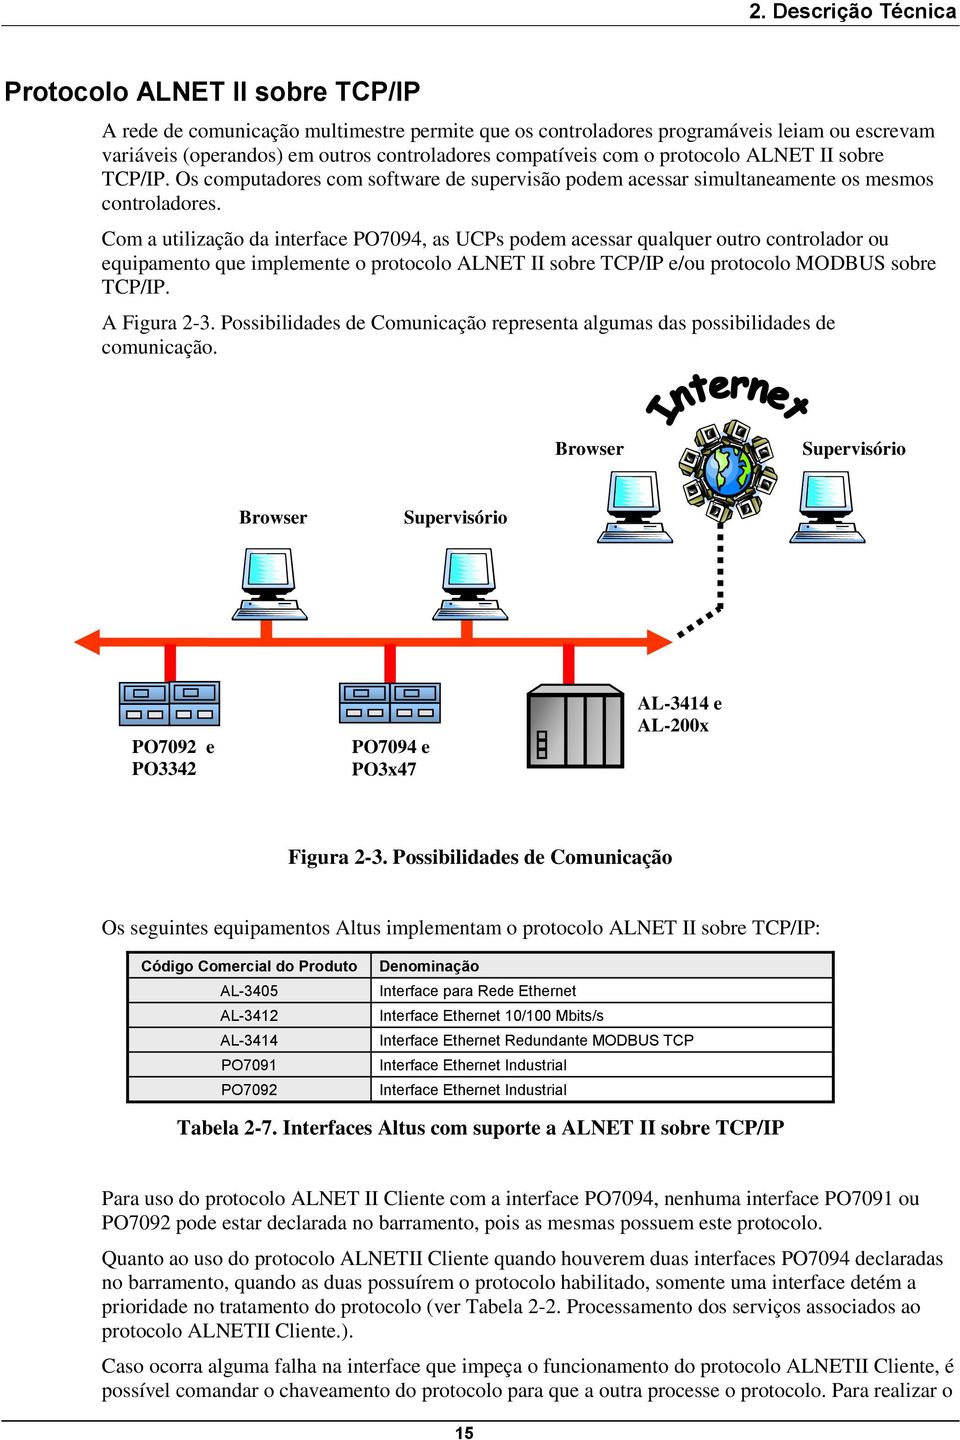 Com a utilização da interface PO7094, as UCPs podem acessar qualquer outro controlador ou equipamento que implemente o protocolo ALNET II sobre TCP/IP e/ou protocolo MODBUS sobre TCP/IP. A Figura 2-3.